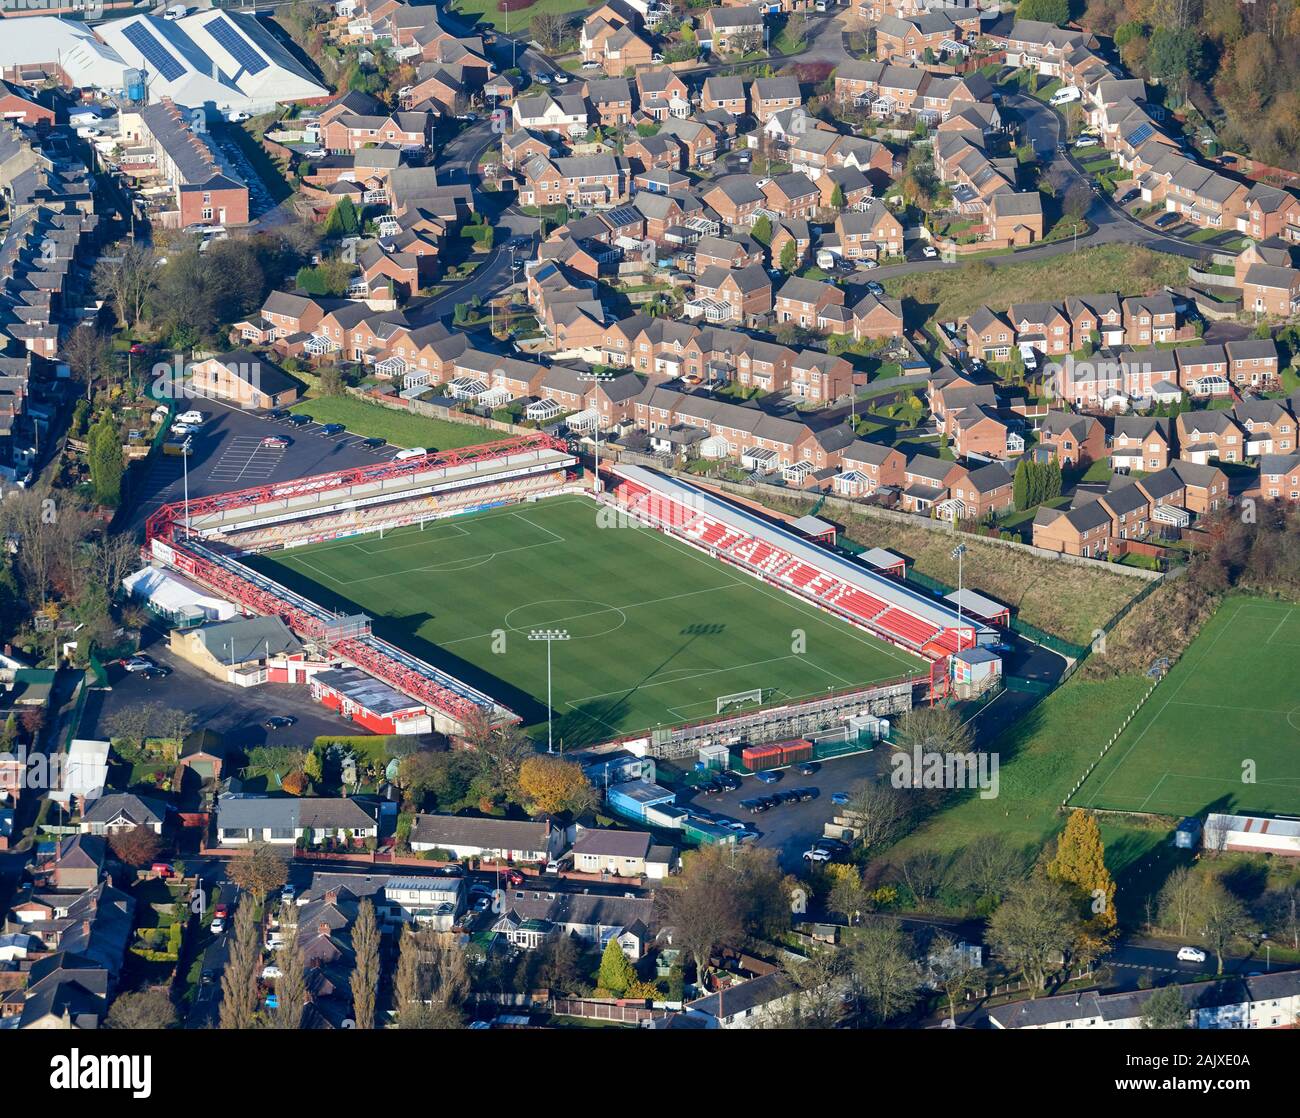 Une vue aérienne de Accrington Stanley, du terrain de football de North West England, UK Banque D'Images